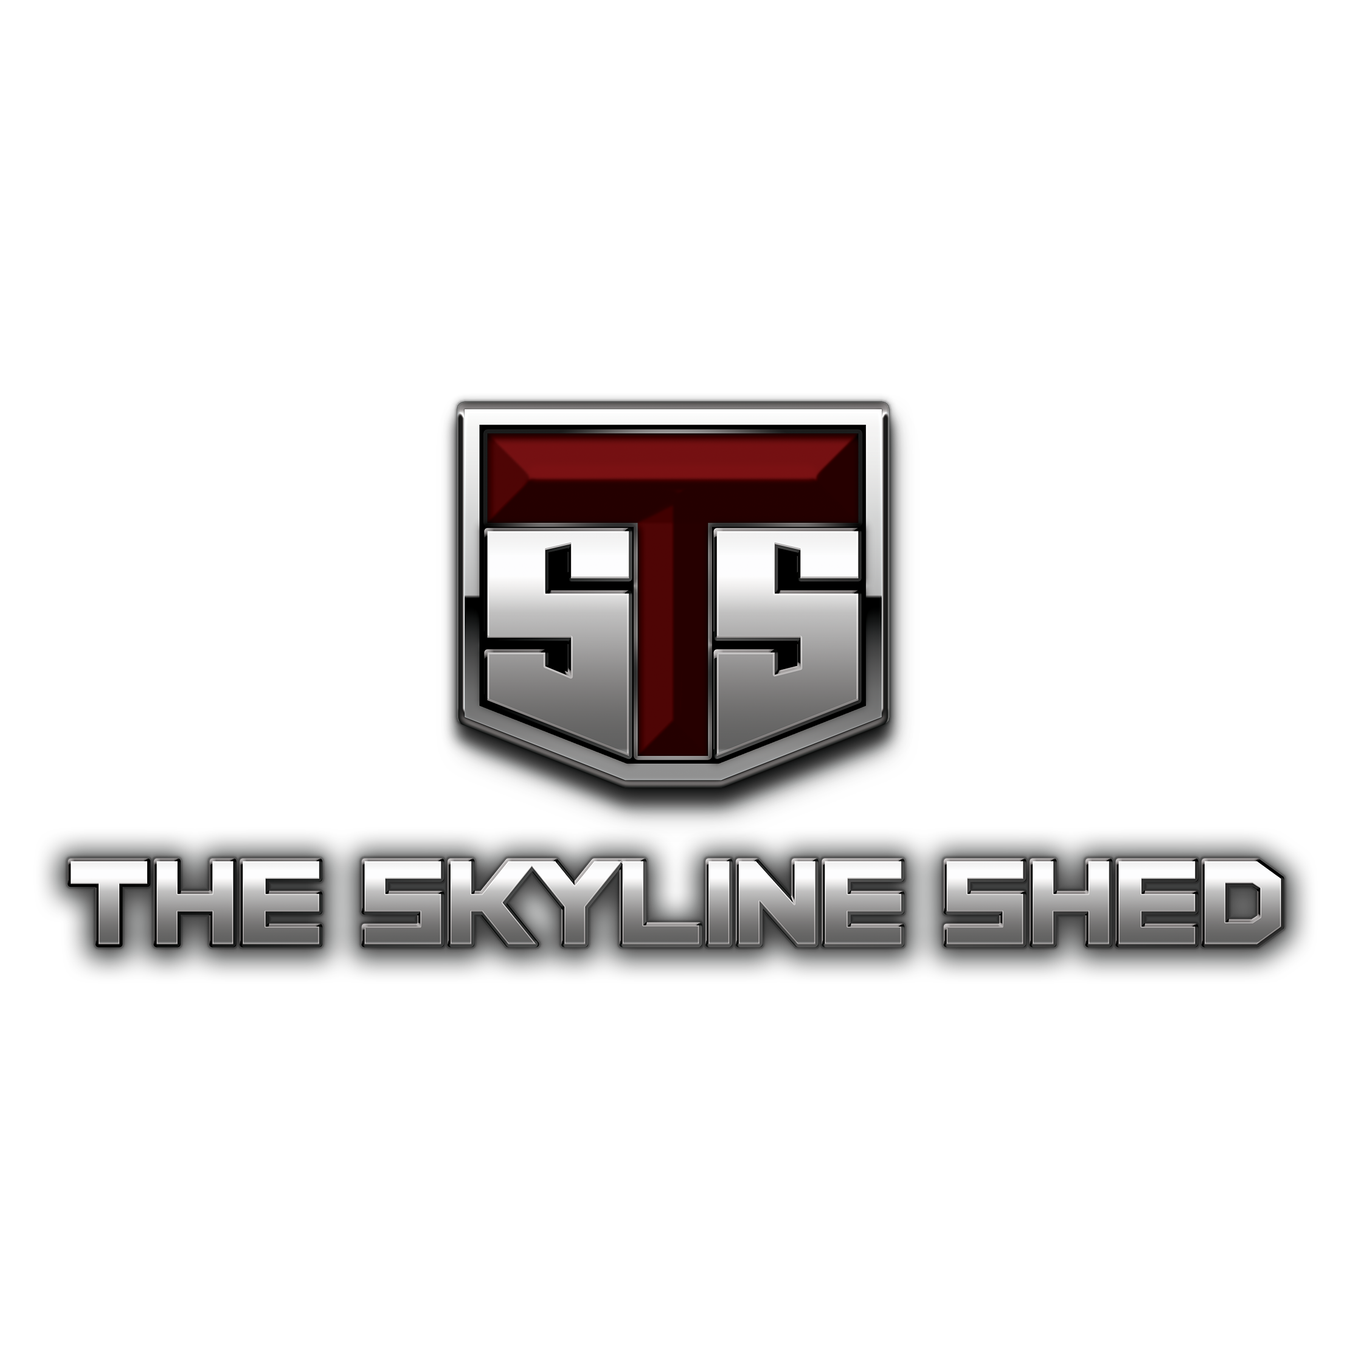 The Skyline Shed